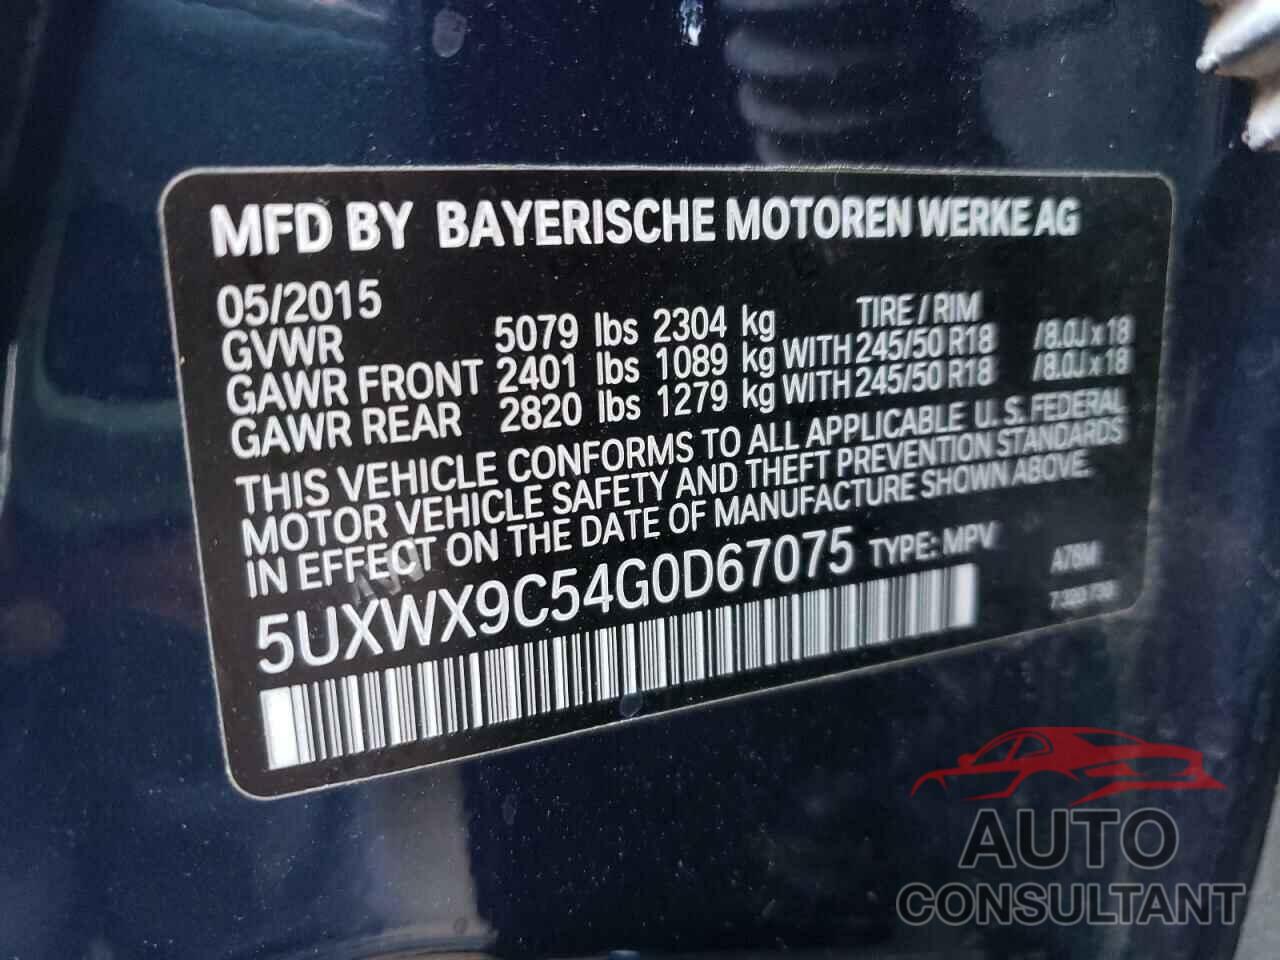 BMW X3 2016 - 5UXWX9C54G0D67075